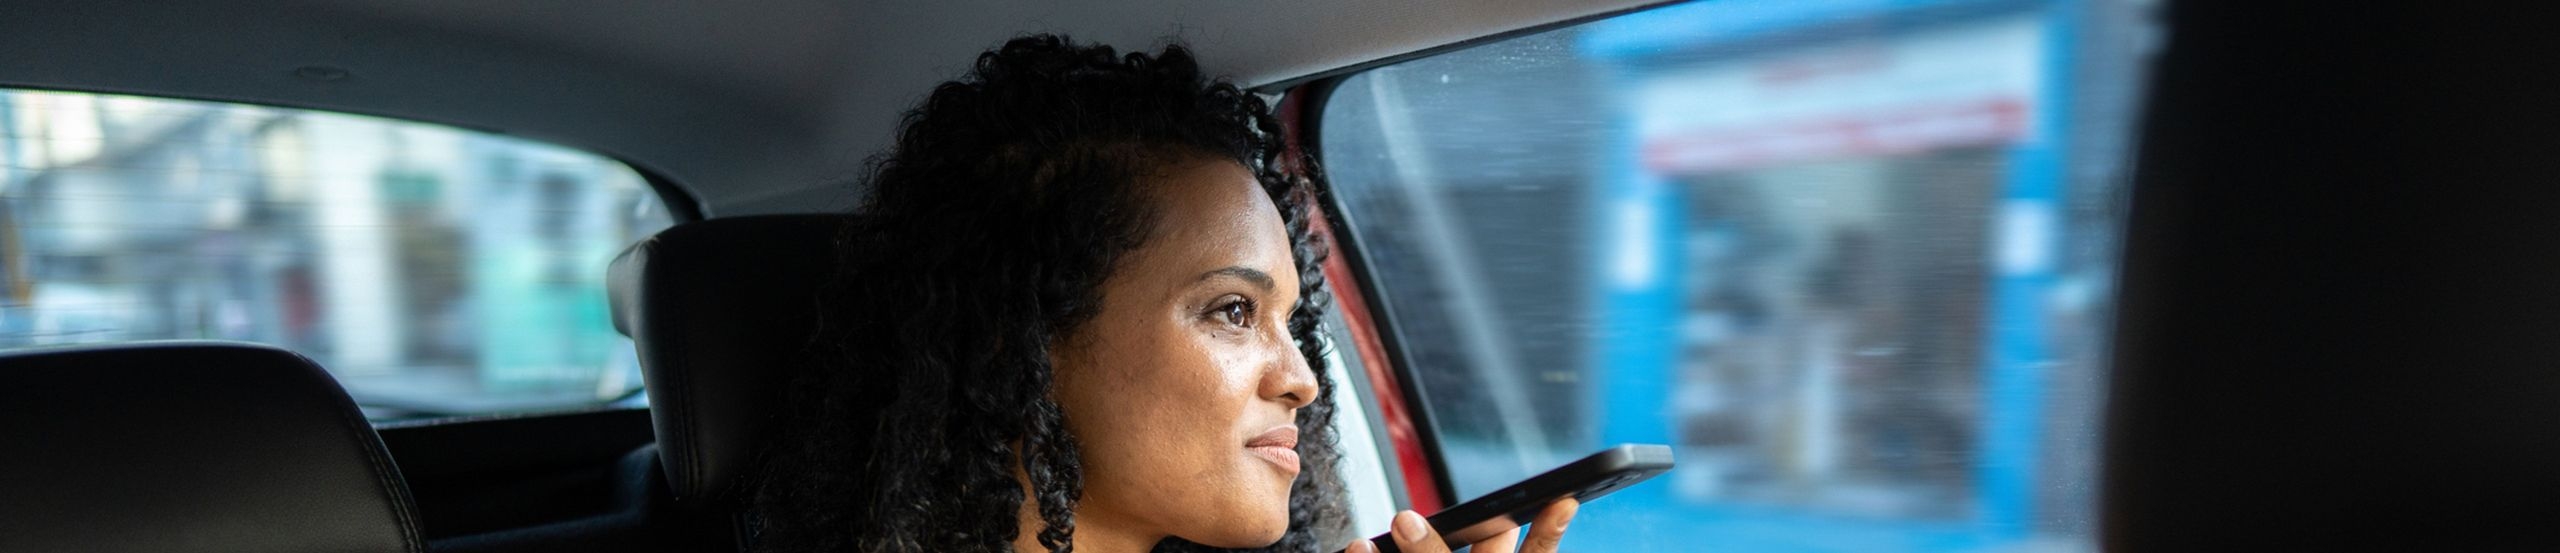 Eine Frau sitzt auf dem Rücksitz eines Autos und hält sich lächelnd ein Smartphone vor ihr Gesicht